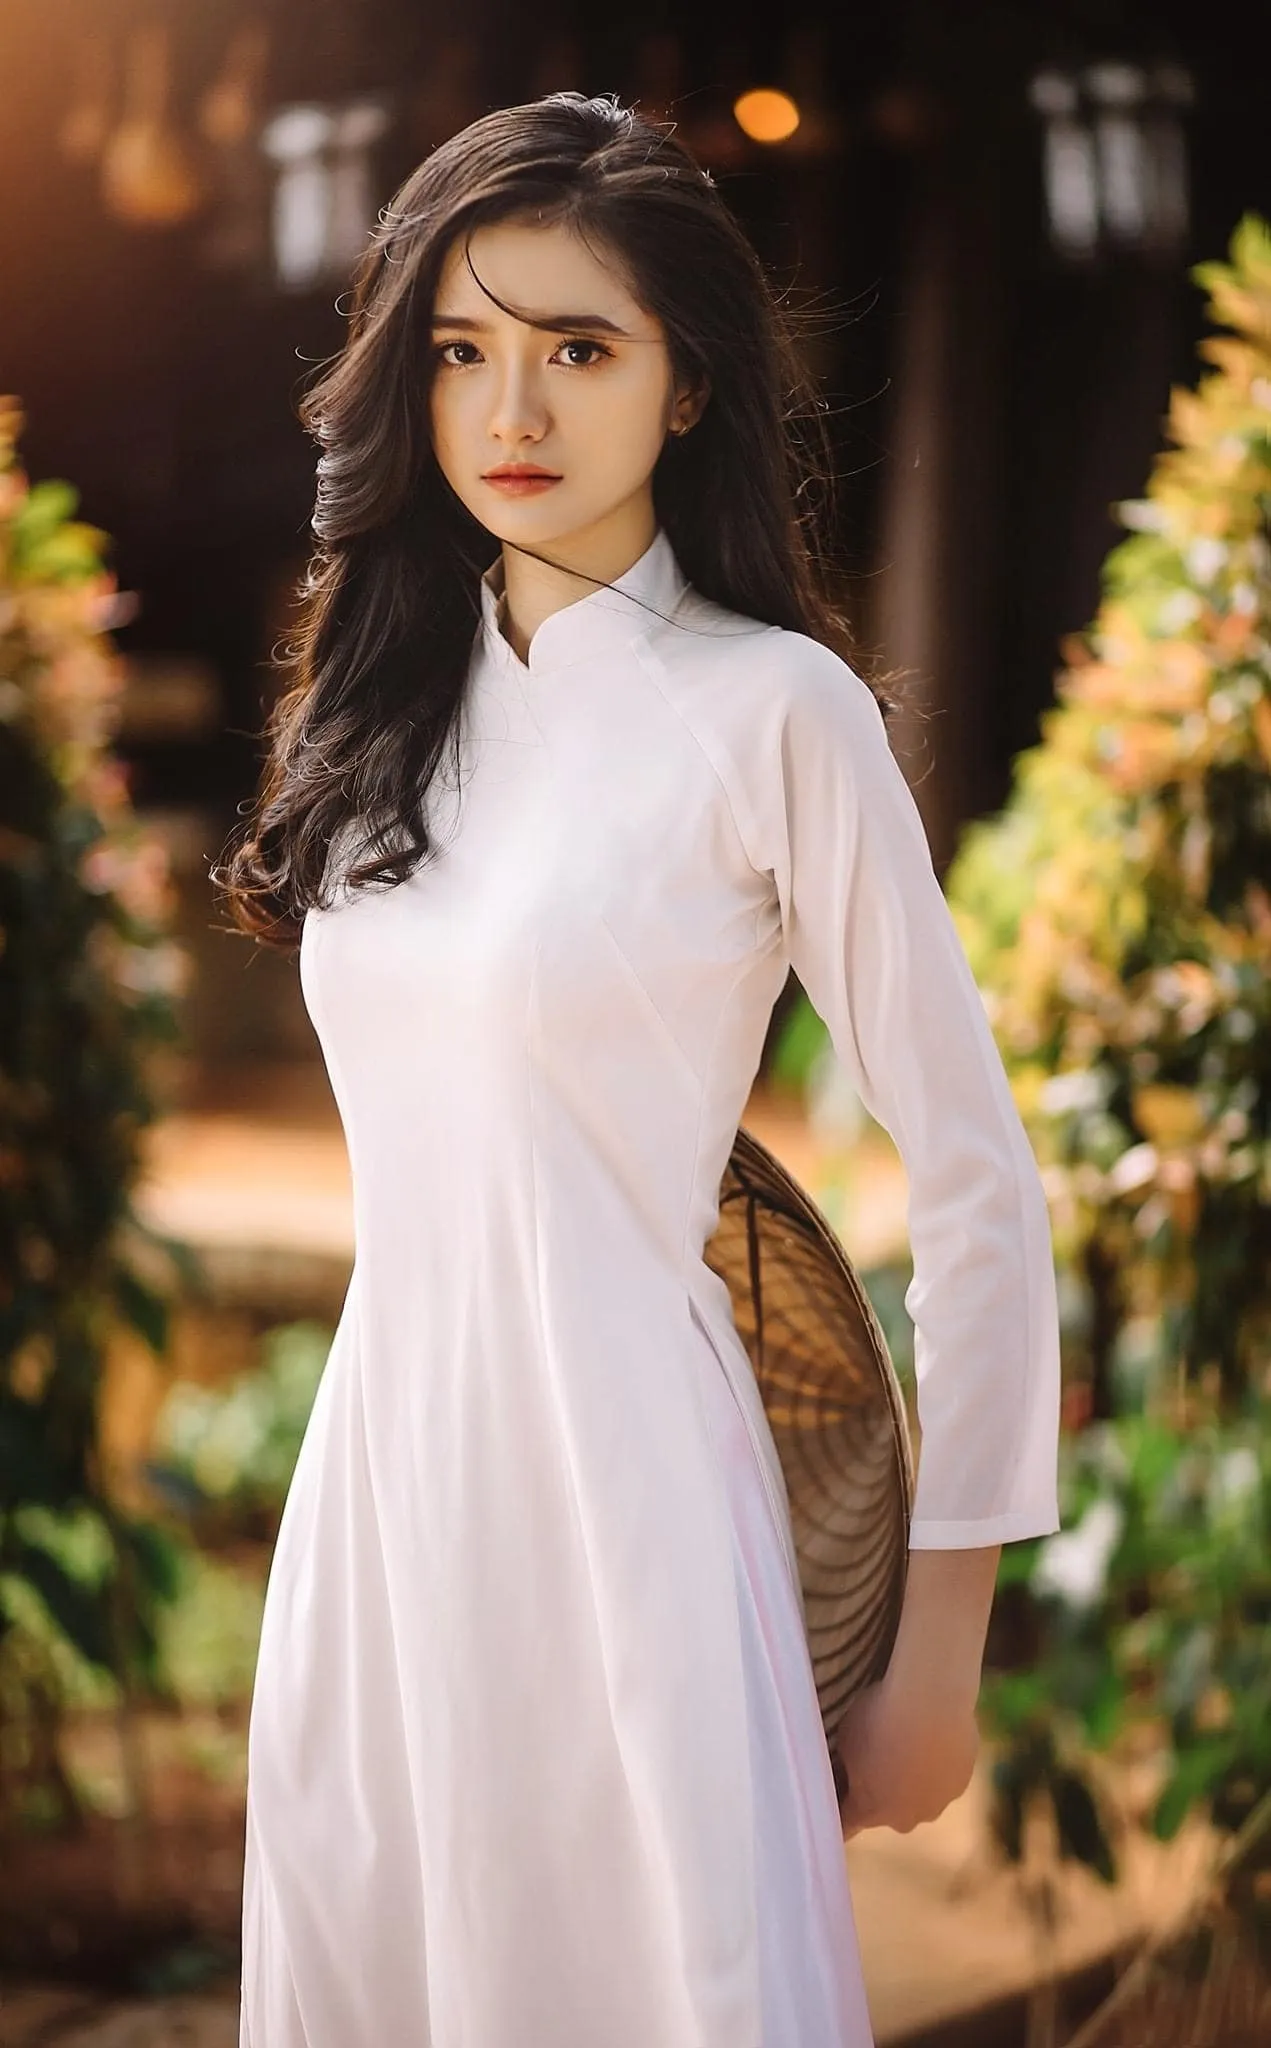 Tao dang voi ao dai 3 - 49 cách tạo dáng chụp ảnh với áo dài tuyệt đẹp - HThao Studio